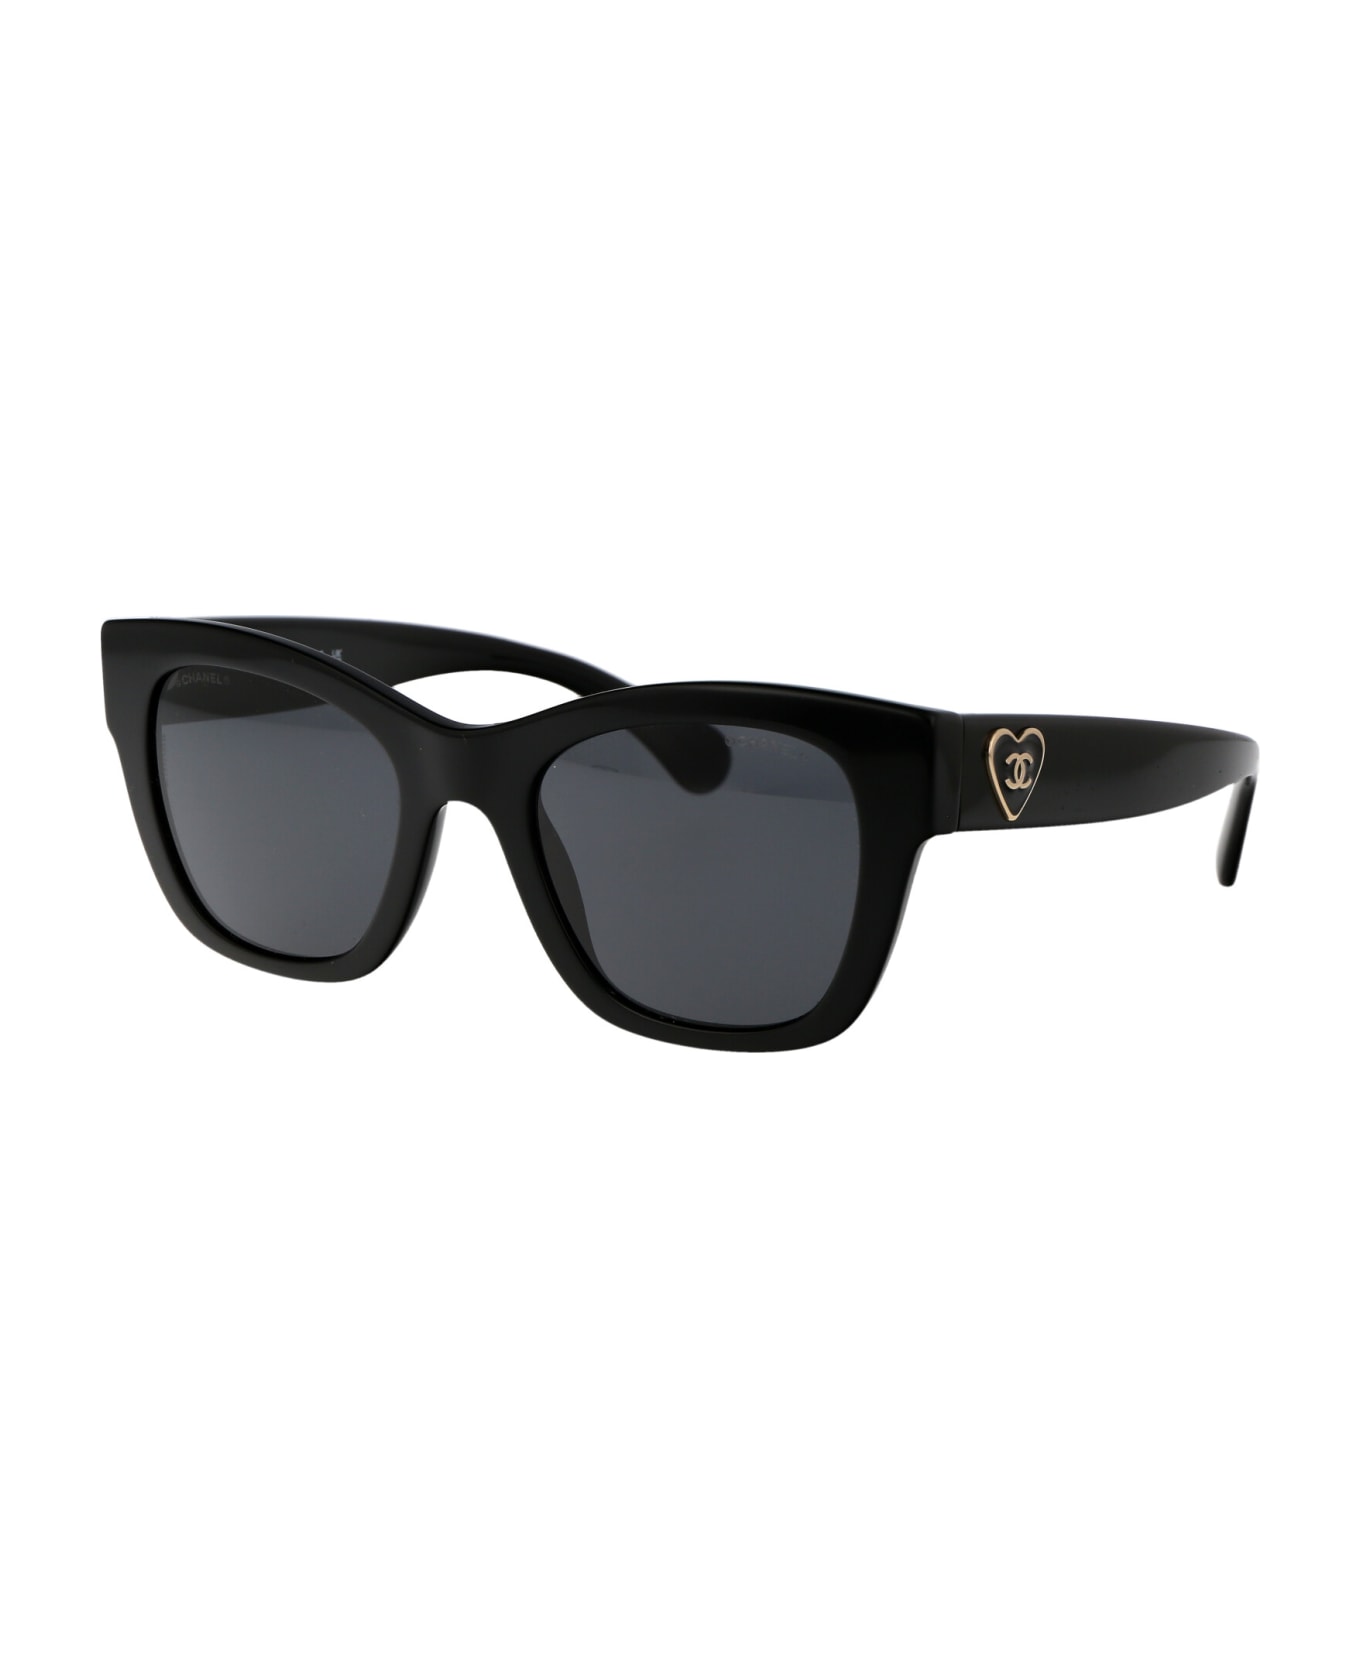 Chanel 0ch5478 Sunglasses - C501S4 BLACK